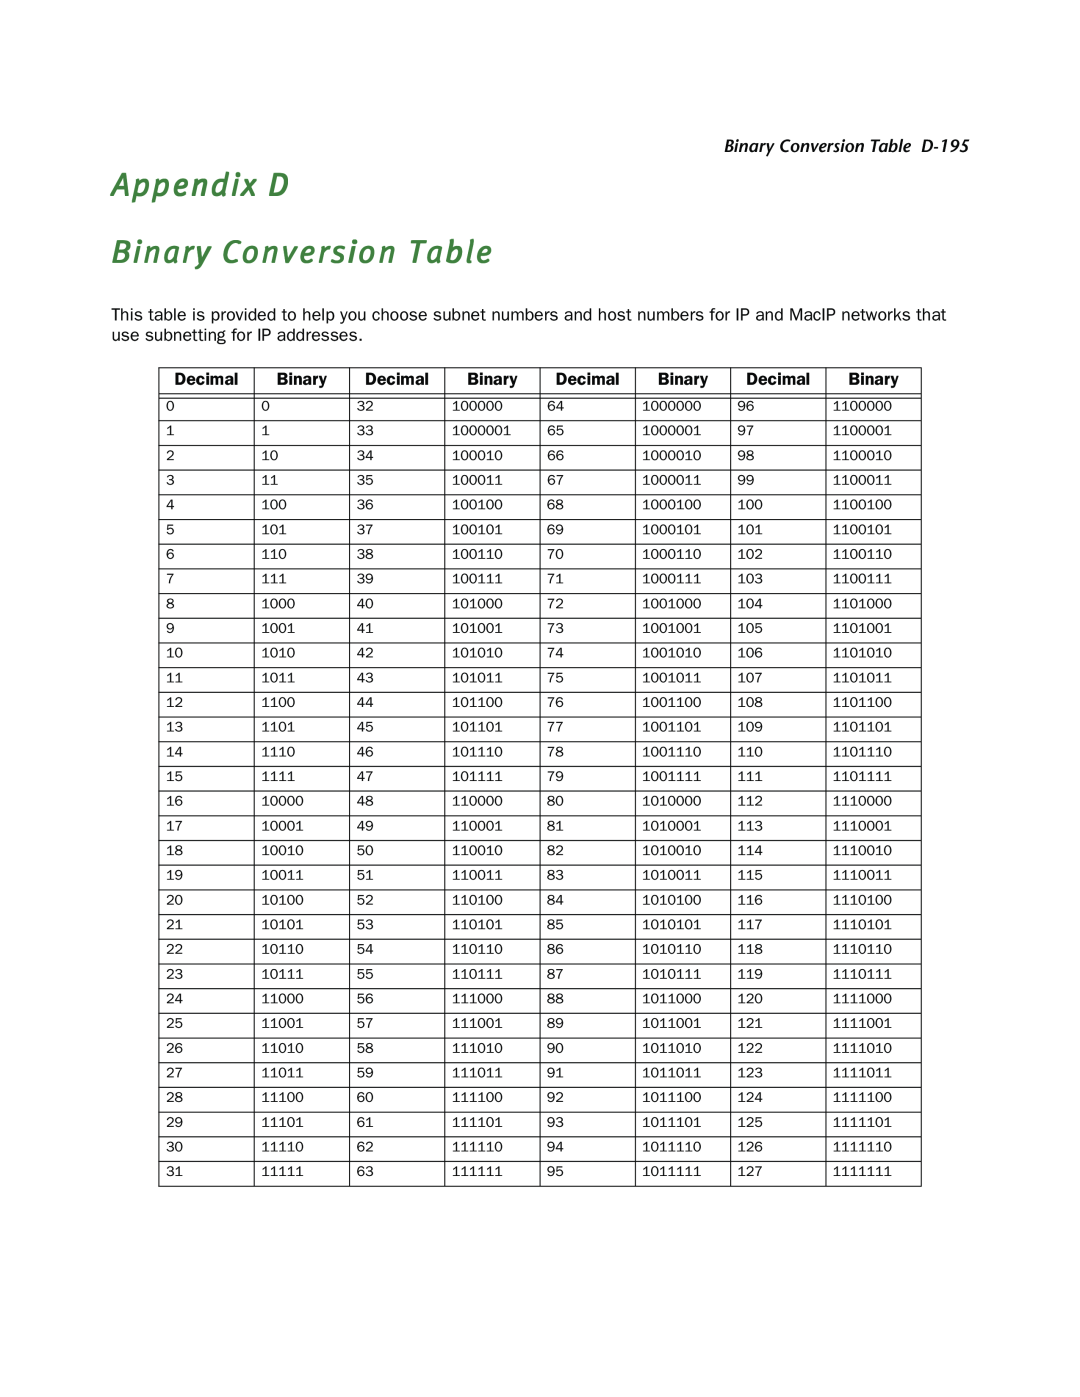 Netopia R910 manual Appendix D Binary Conversion Table, Binary Conversion Table D-195 